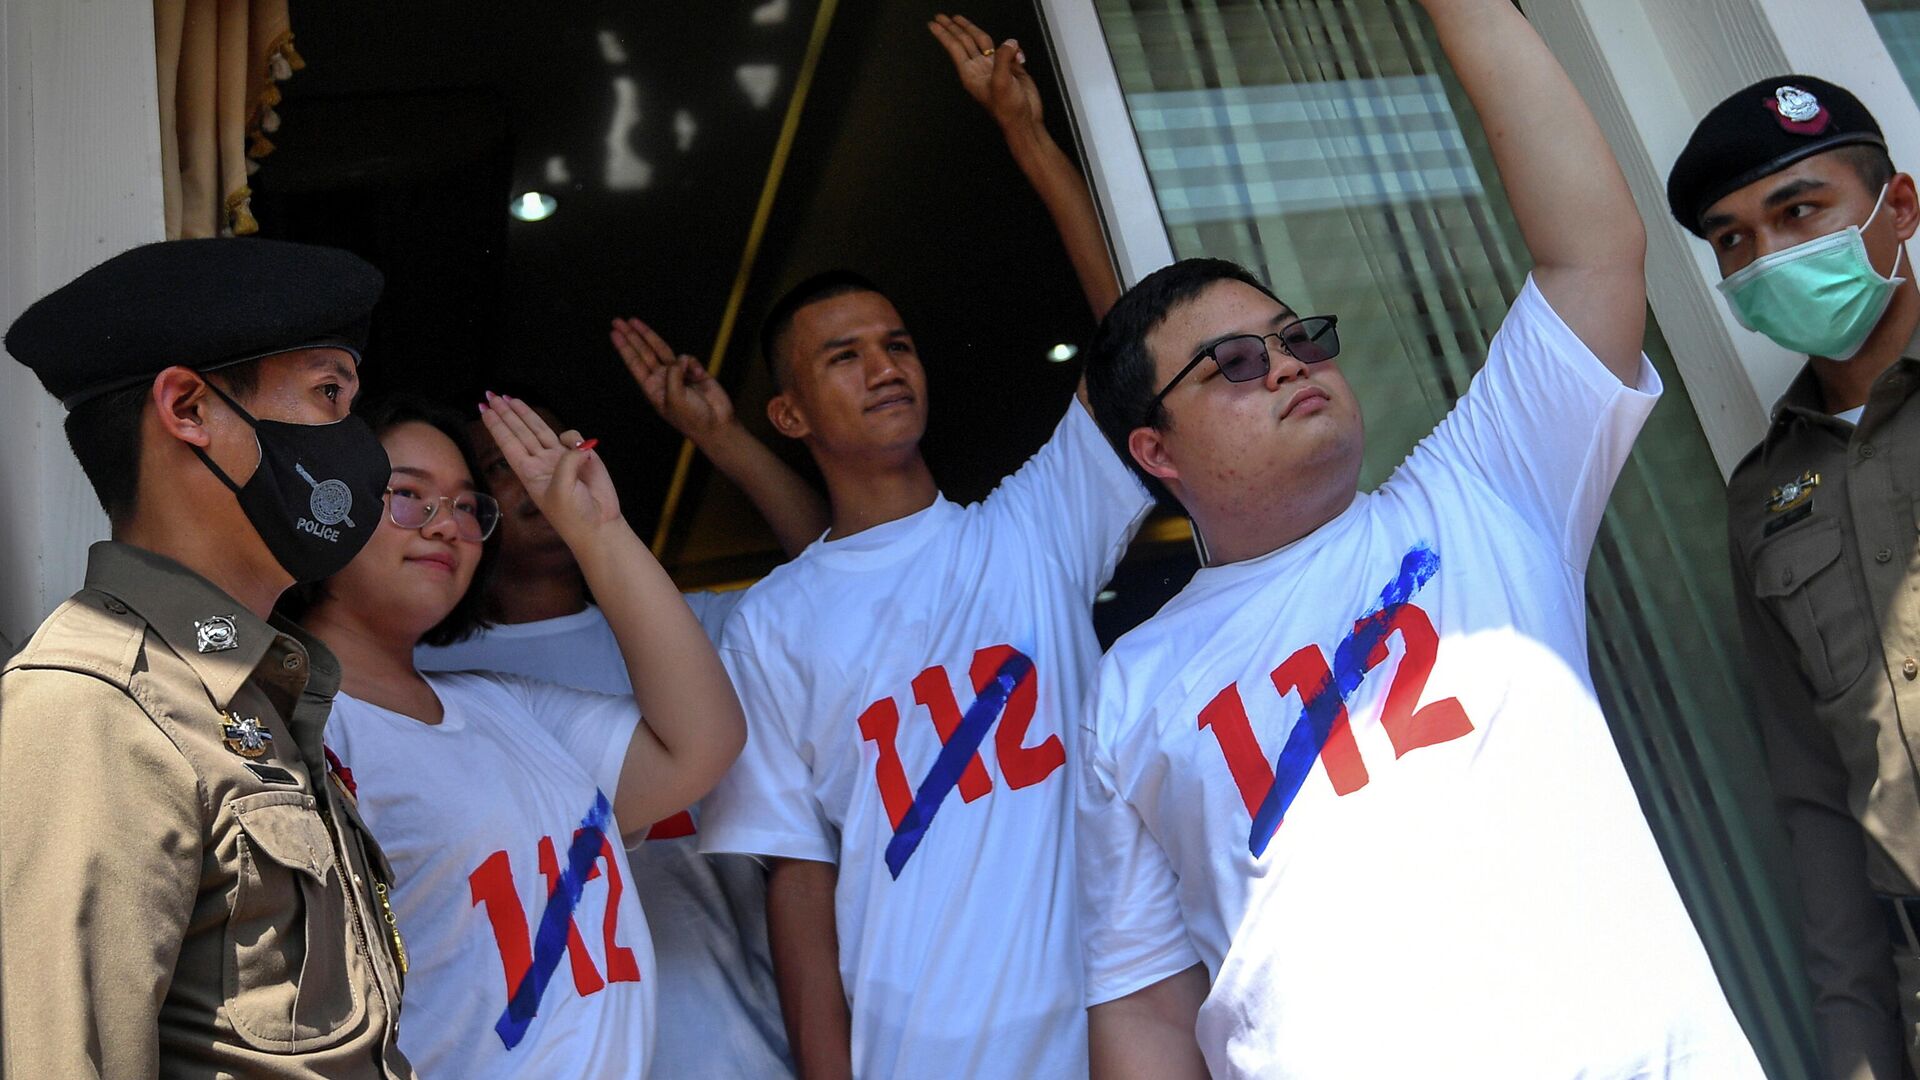 Активисты в Таиланде, выступающие за отмену статьи 112 уголовного кодекса Таиланда, которая наказывает оскорбление монархии тюремным сроком - РИА Новости, 1920, 10.12.2020